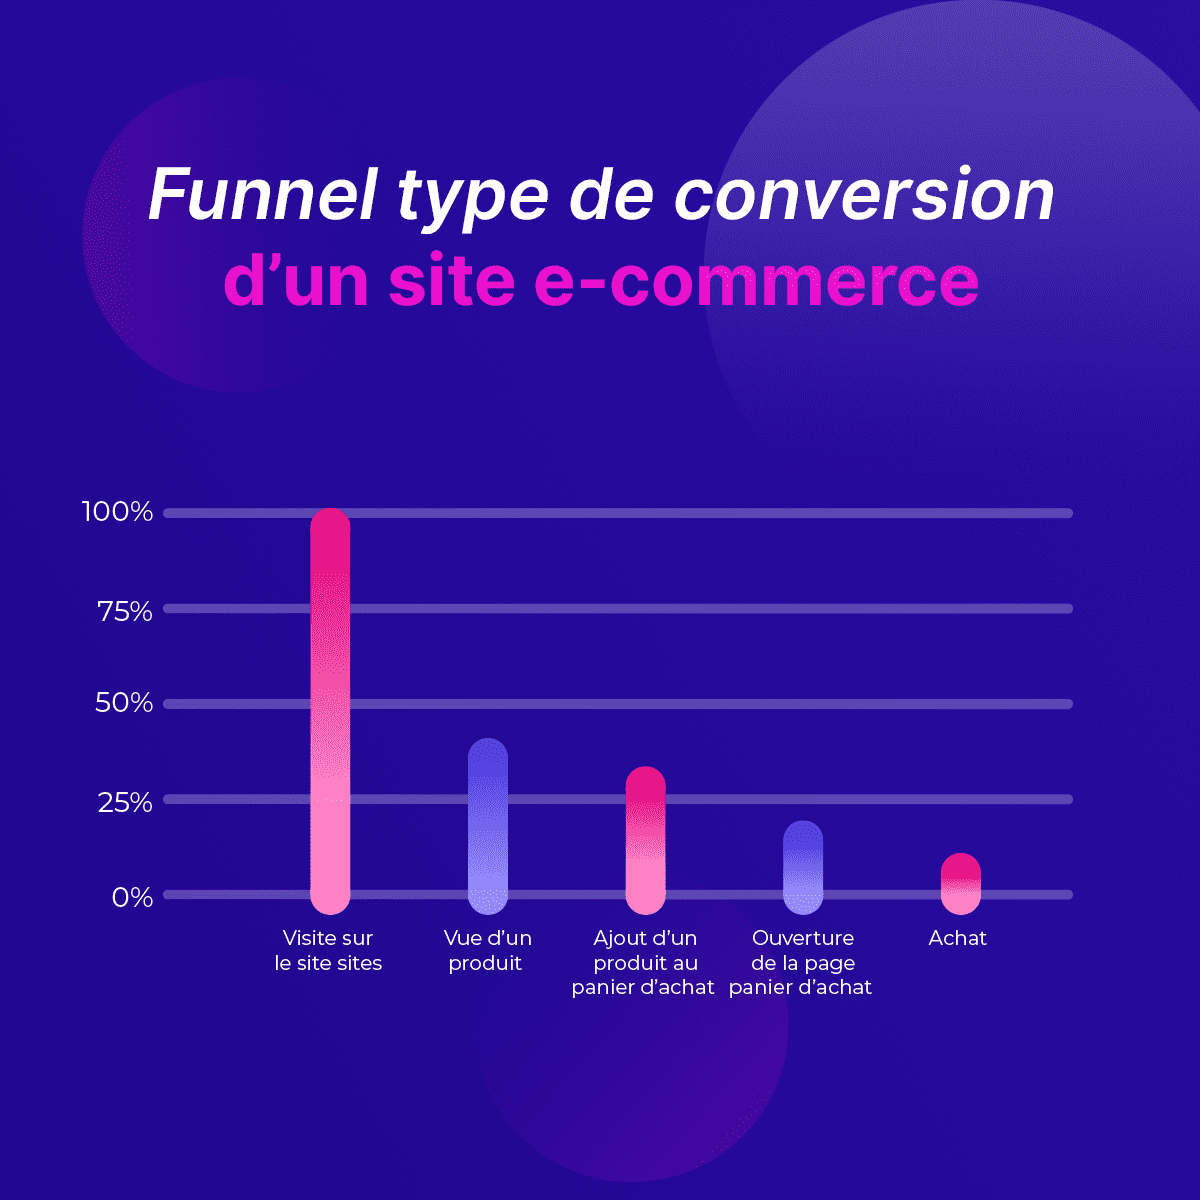 Funnel type de conversion d'un site e-commerce